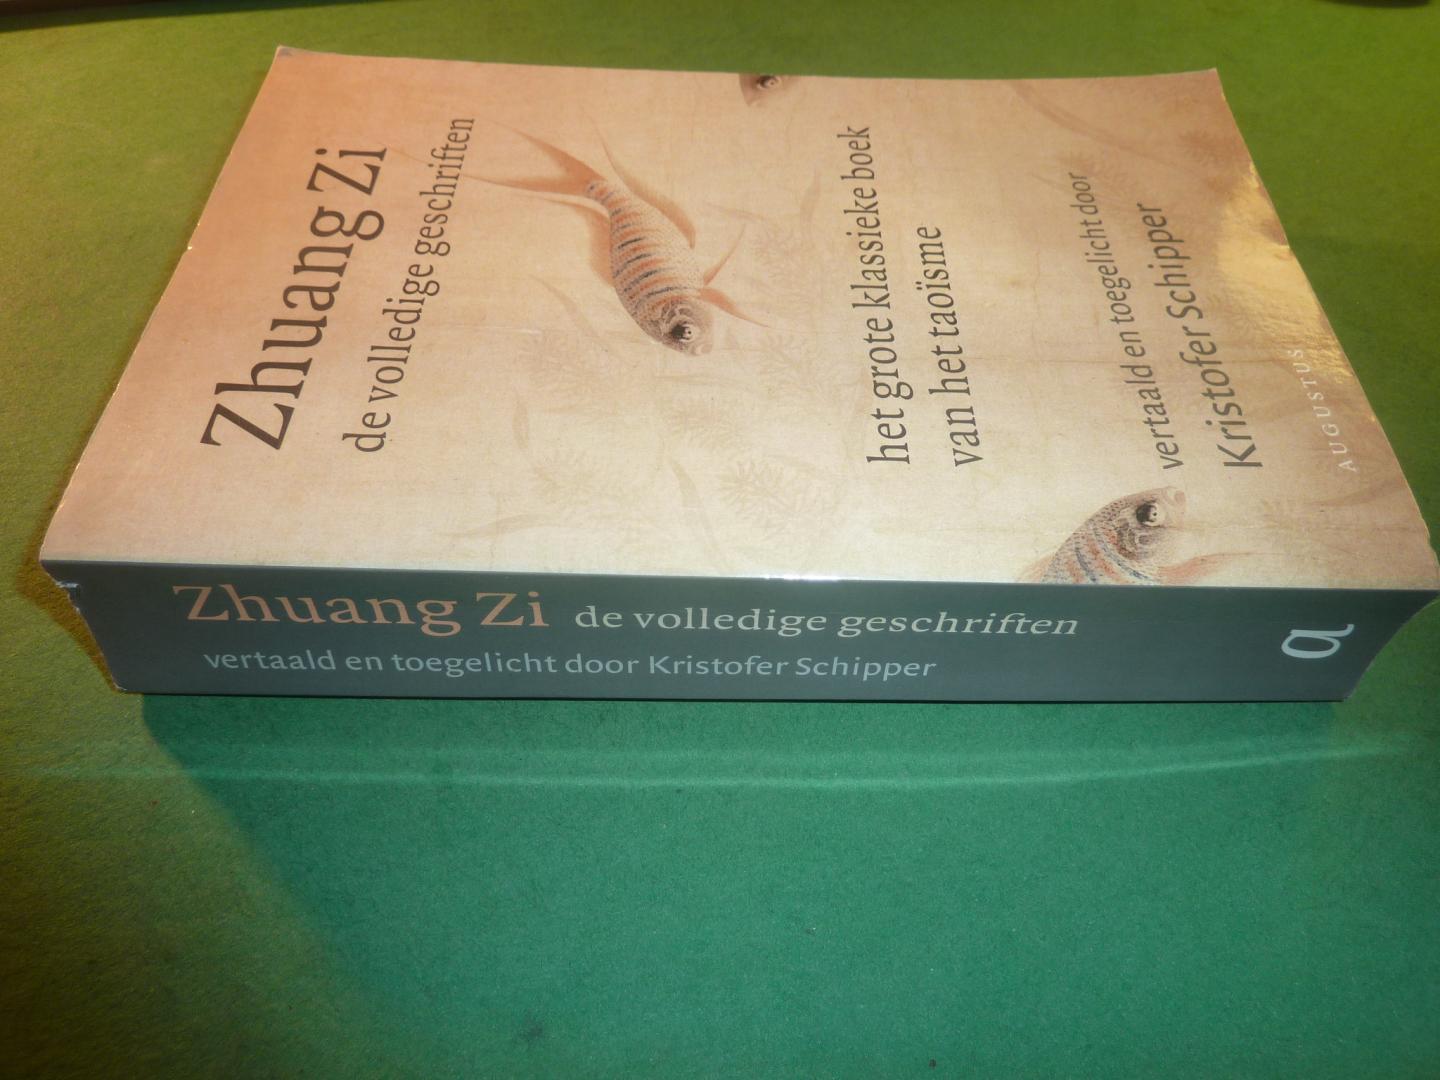 Zhuang Zi   Vertaald en toegelicht door Kristofer Schipper - Zhuang Zi   De volledige geschriften   Het grote klassieke boek van het taoïsme